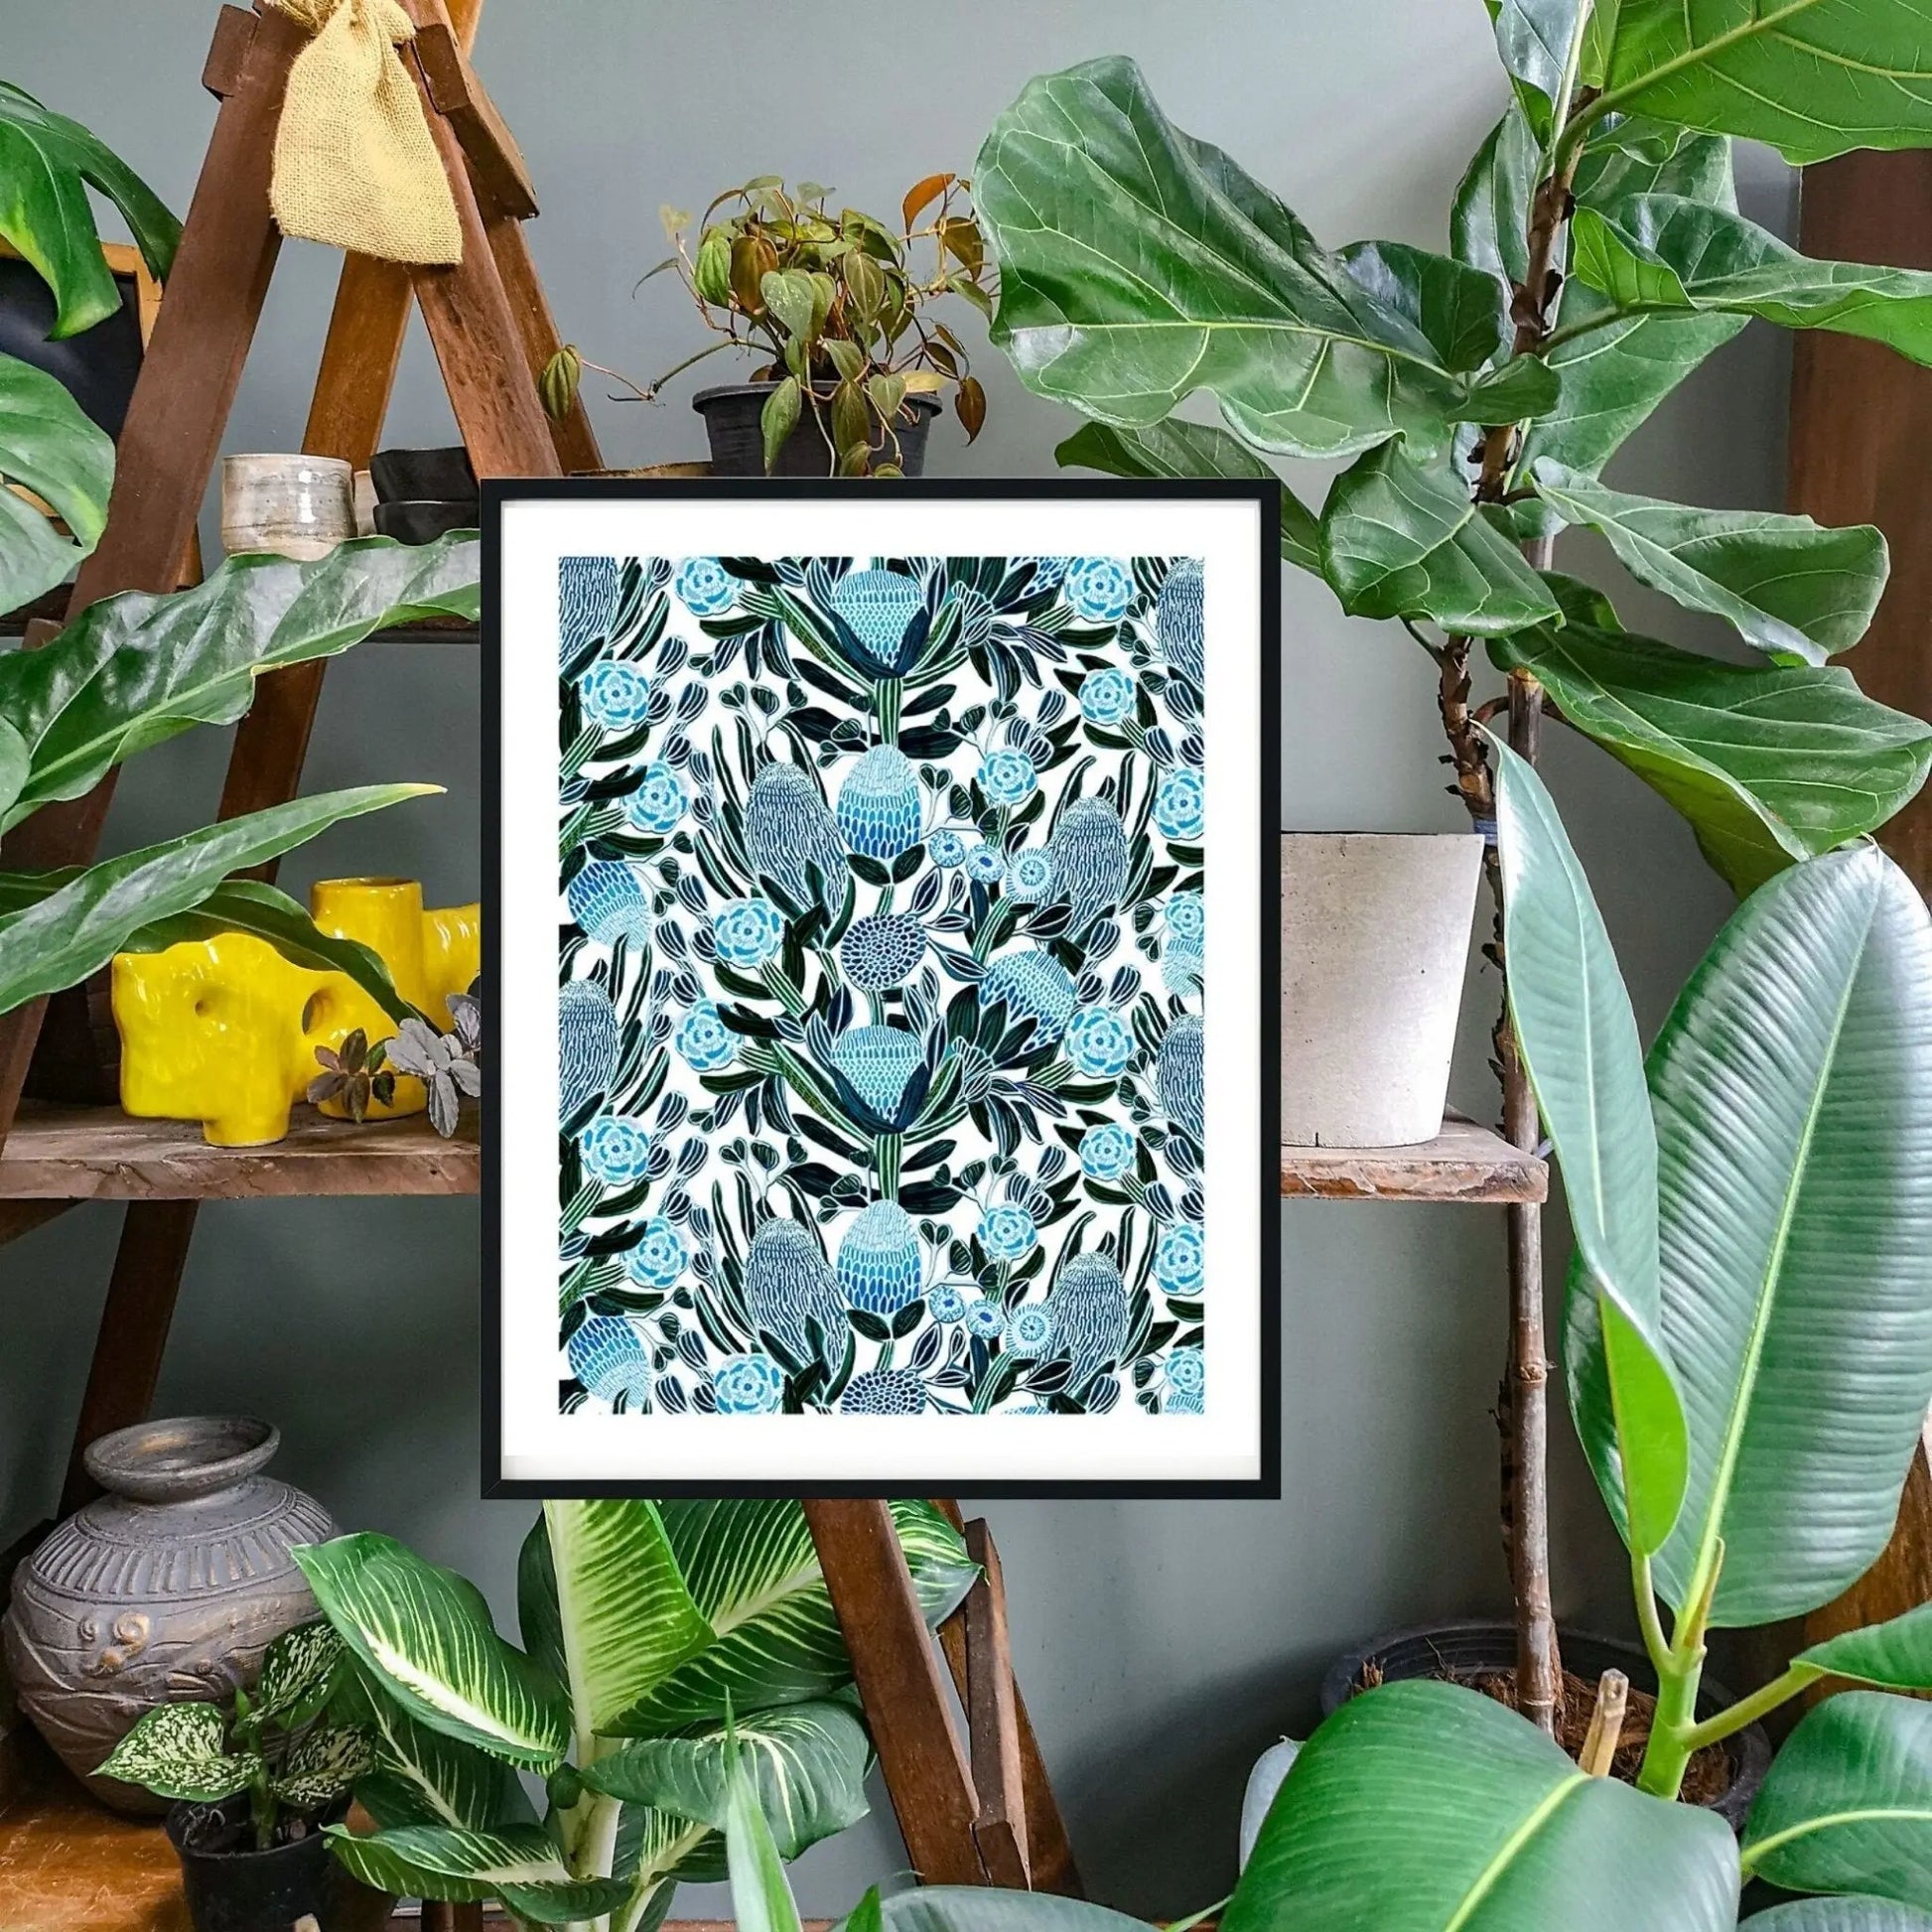 Blue Banksia Botanical Art Print Kirsten Katz